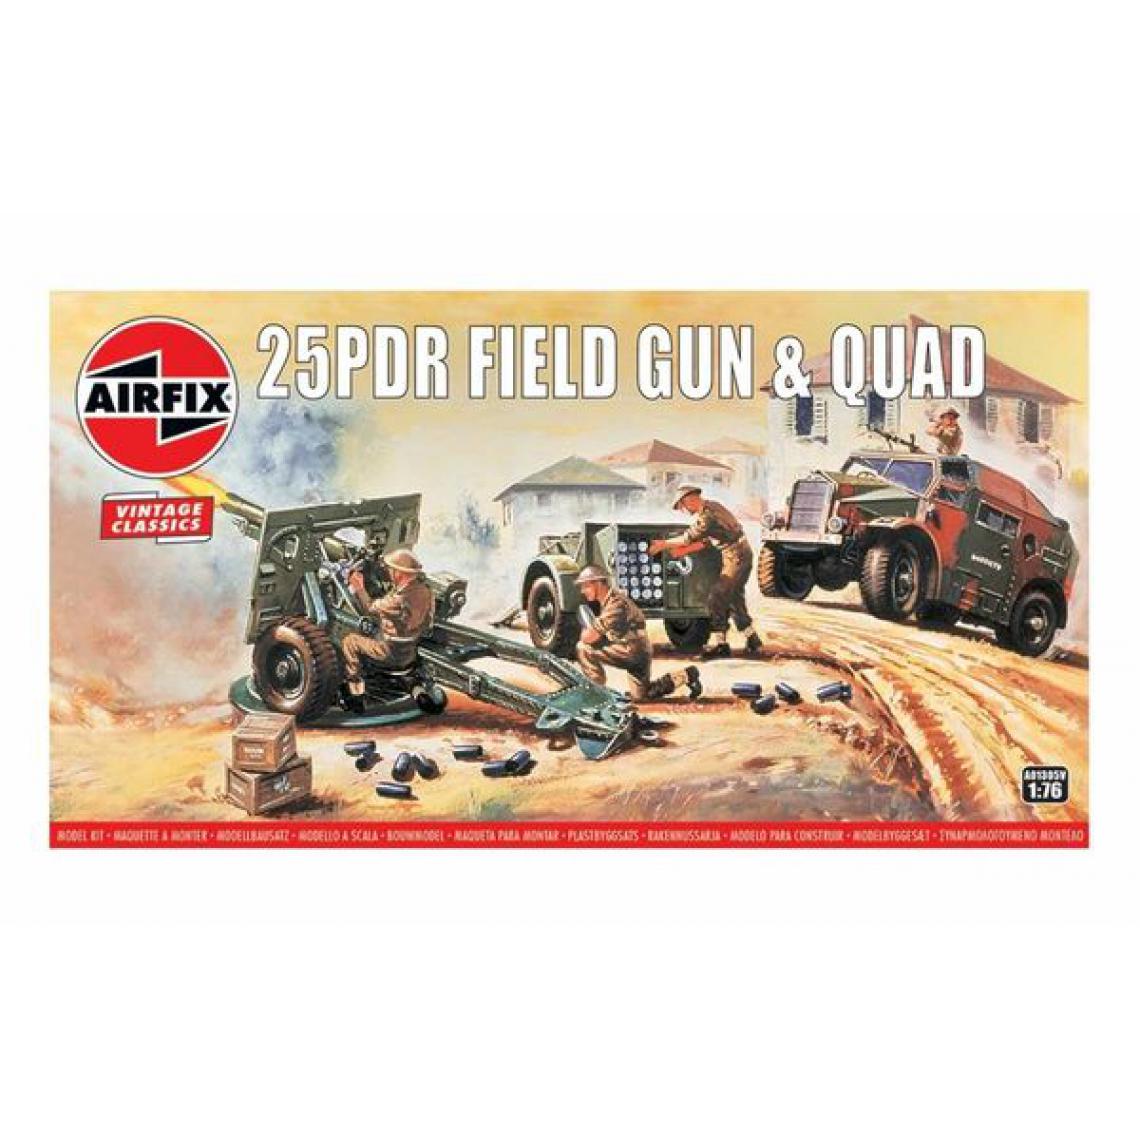 Airfix - 25pdr Field Gun & Quad, Vintage Classics - 1:76e - Airfix - Voitures RC